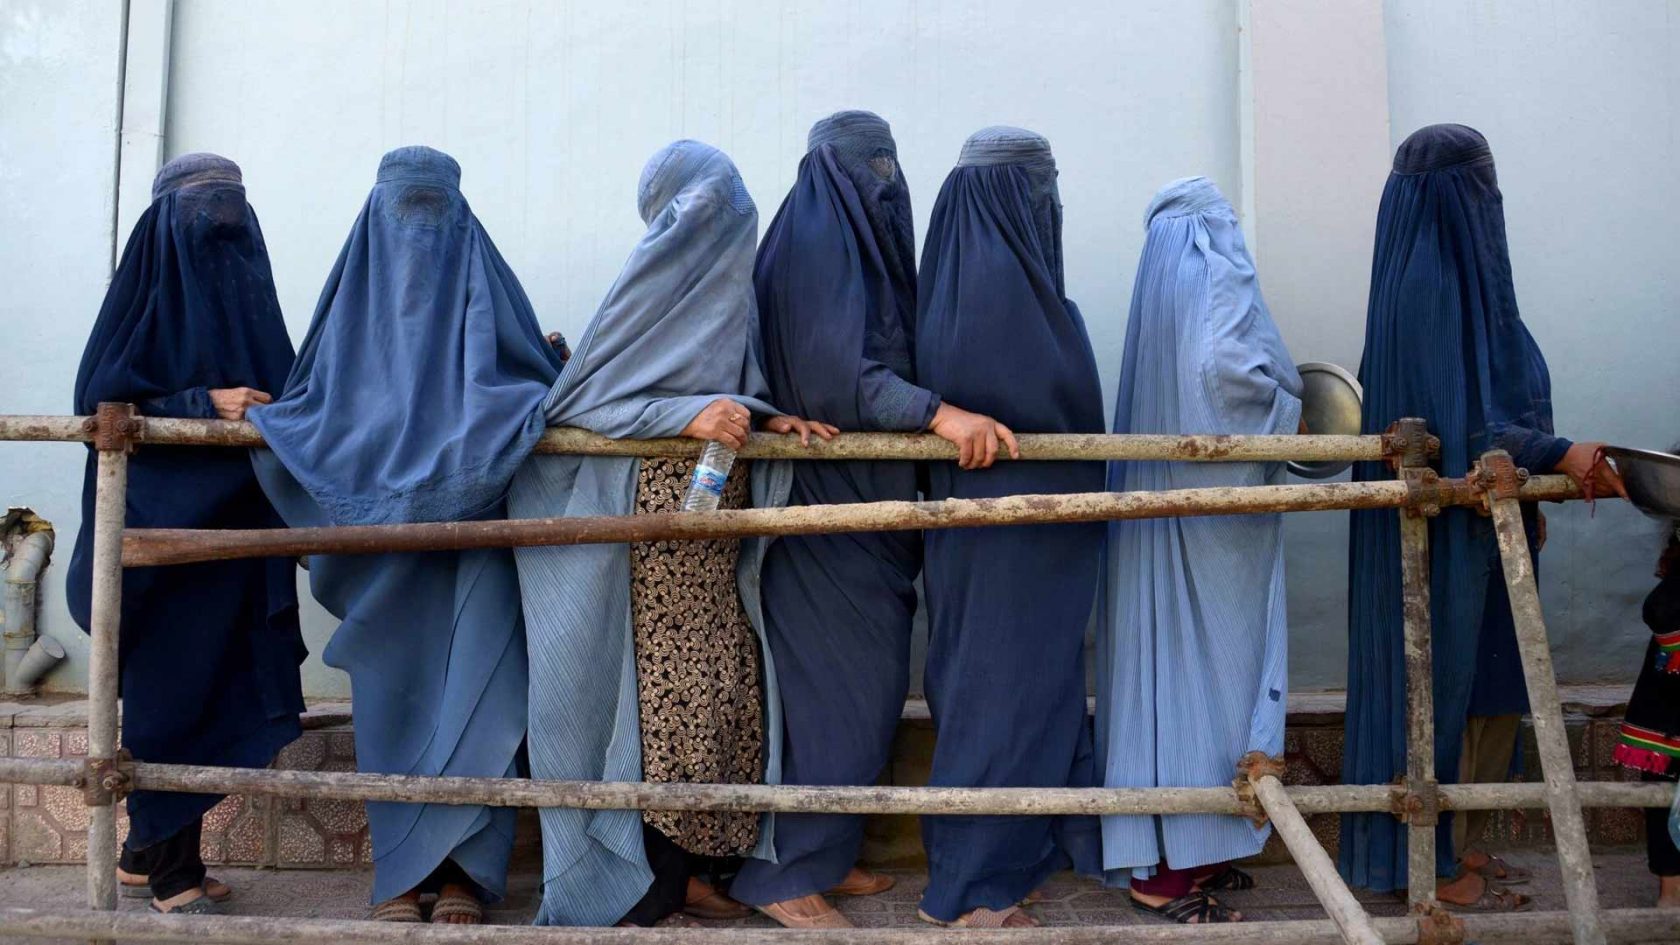 L’Afghanistan talebano: Ong senza donne mentre il mondo chiude gli occhi